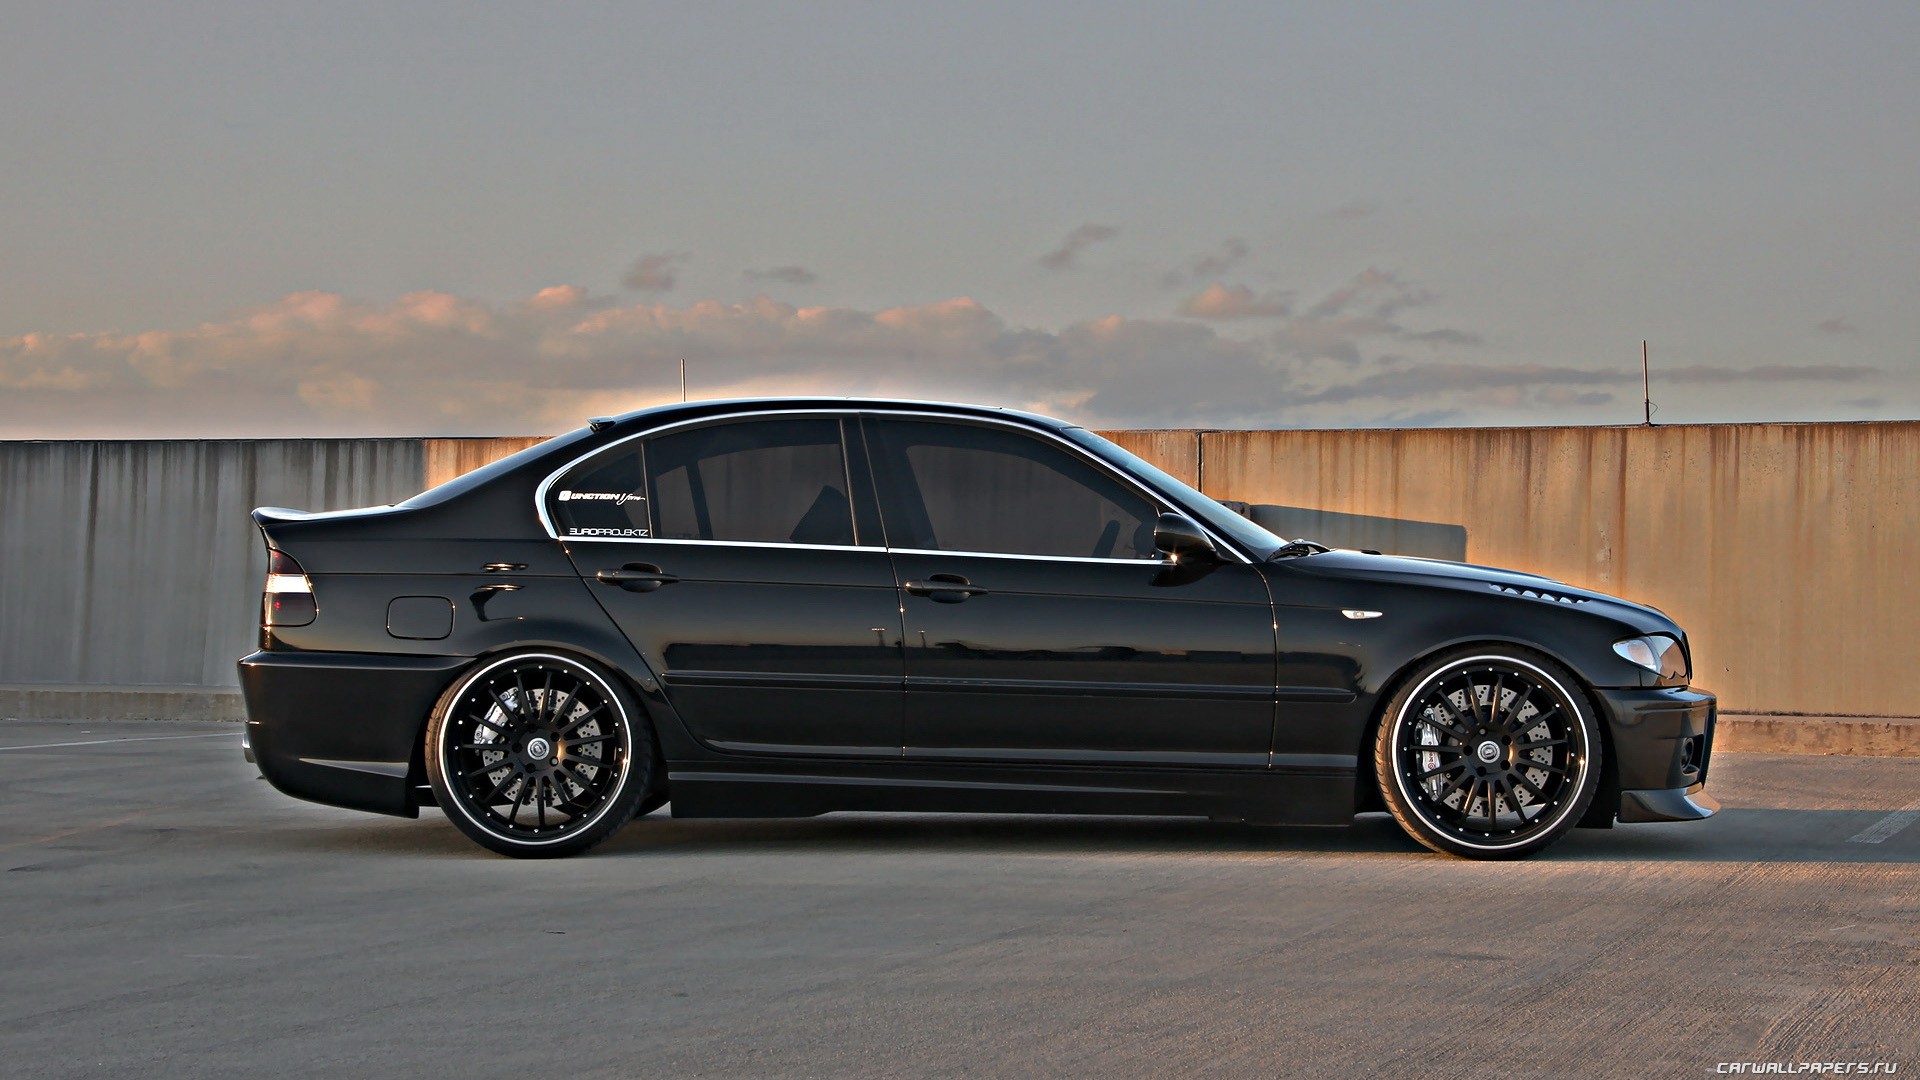 BMW, black, cars, BMW E46, black cars - desktop wallpaper